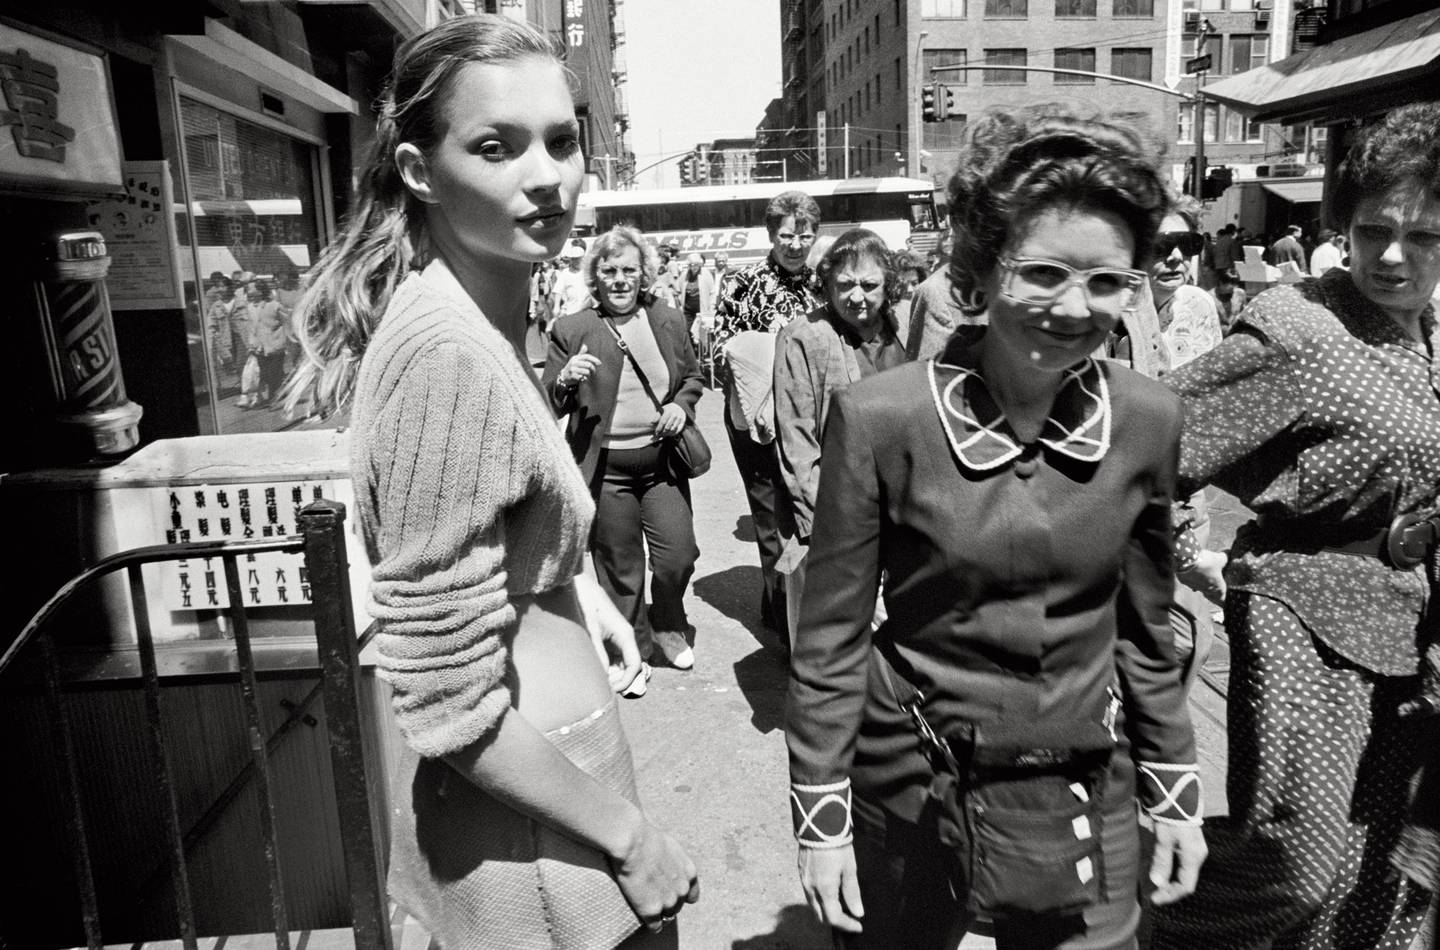 Fotografen Glen Ruchford valgte å fotografere Kate Moss i svart-hvitt, det falt ikke i god jord hos magasinet Harper's Bazaar.